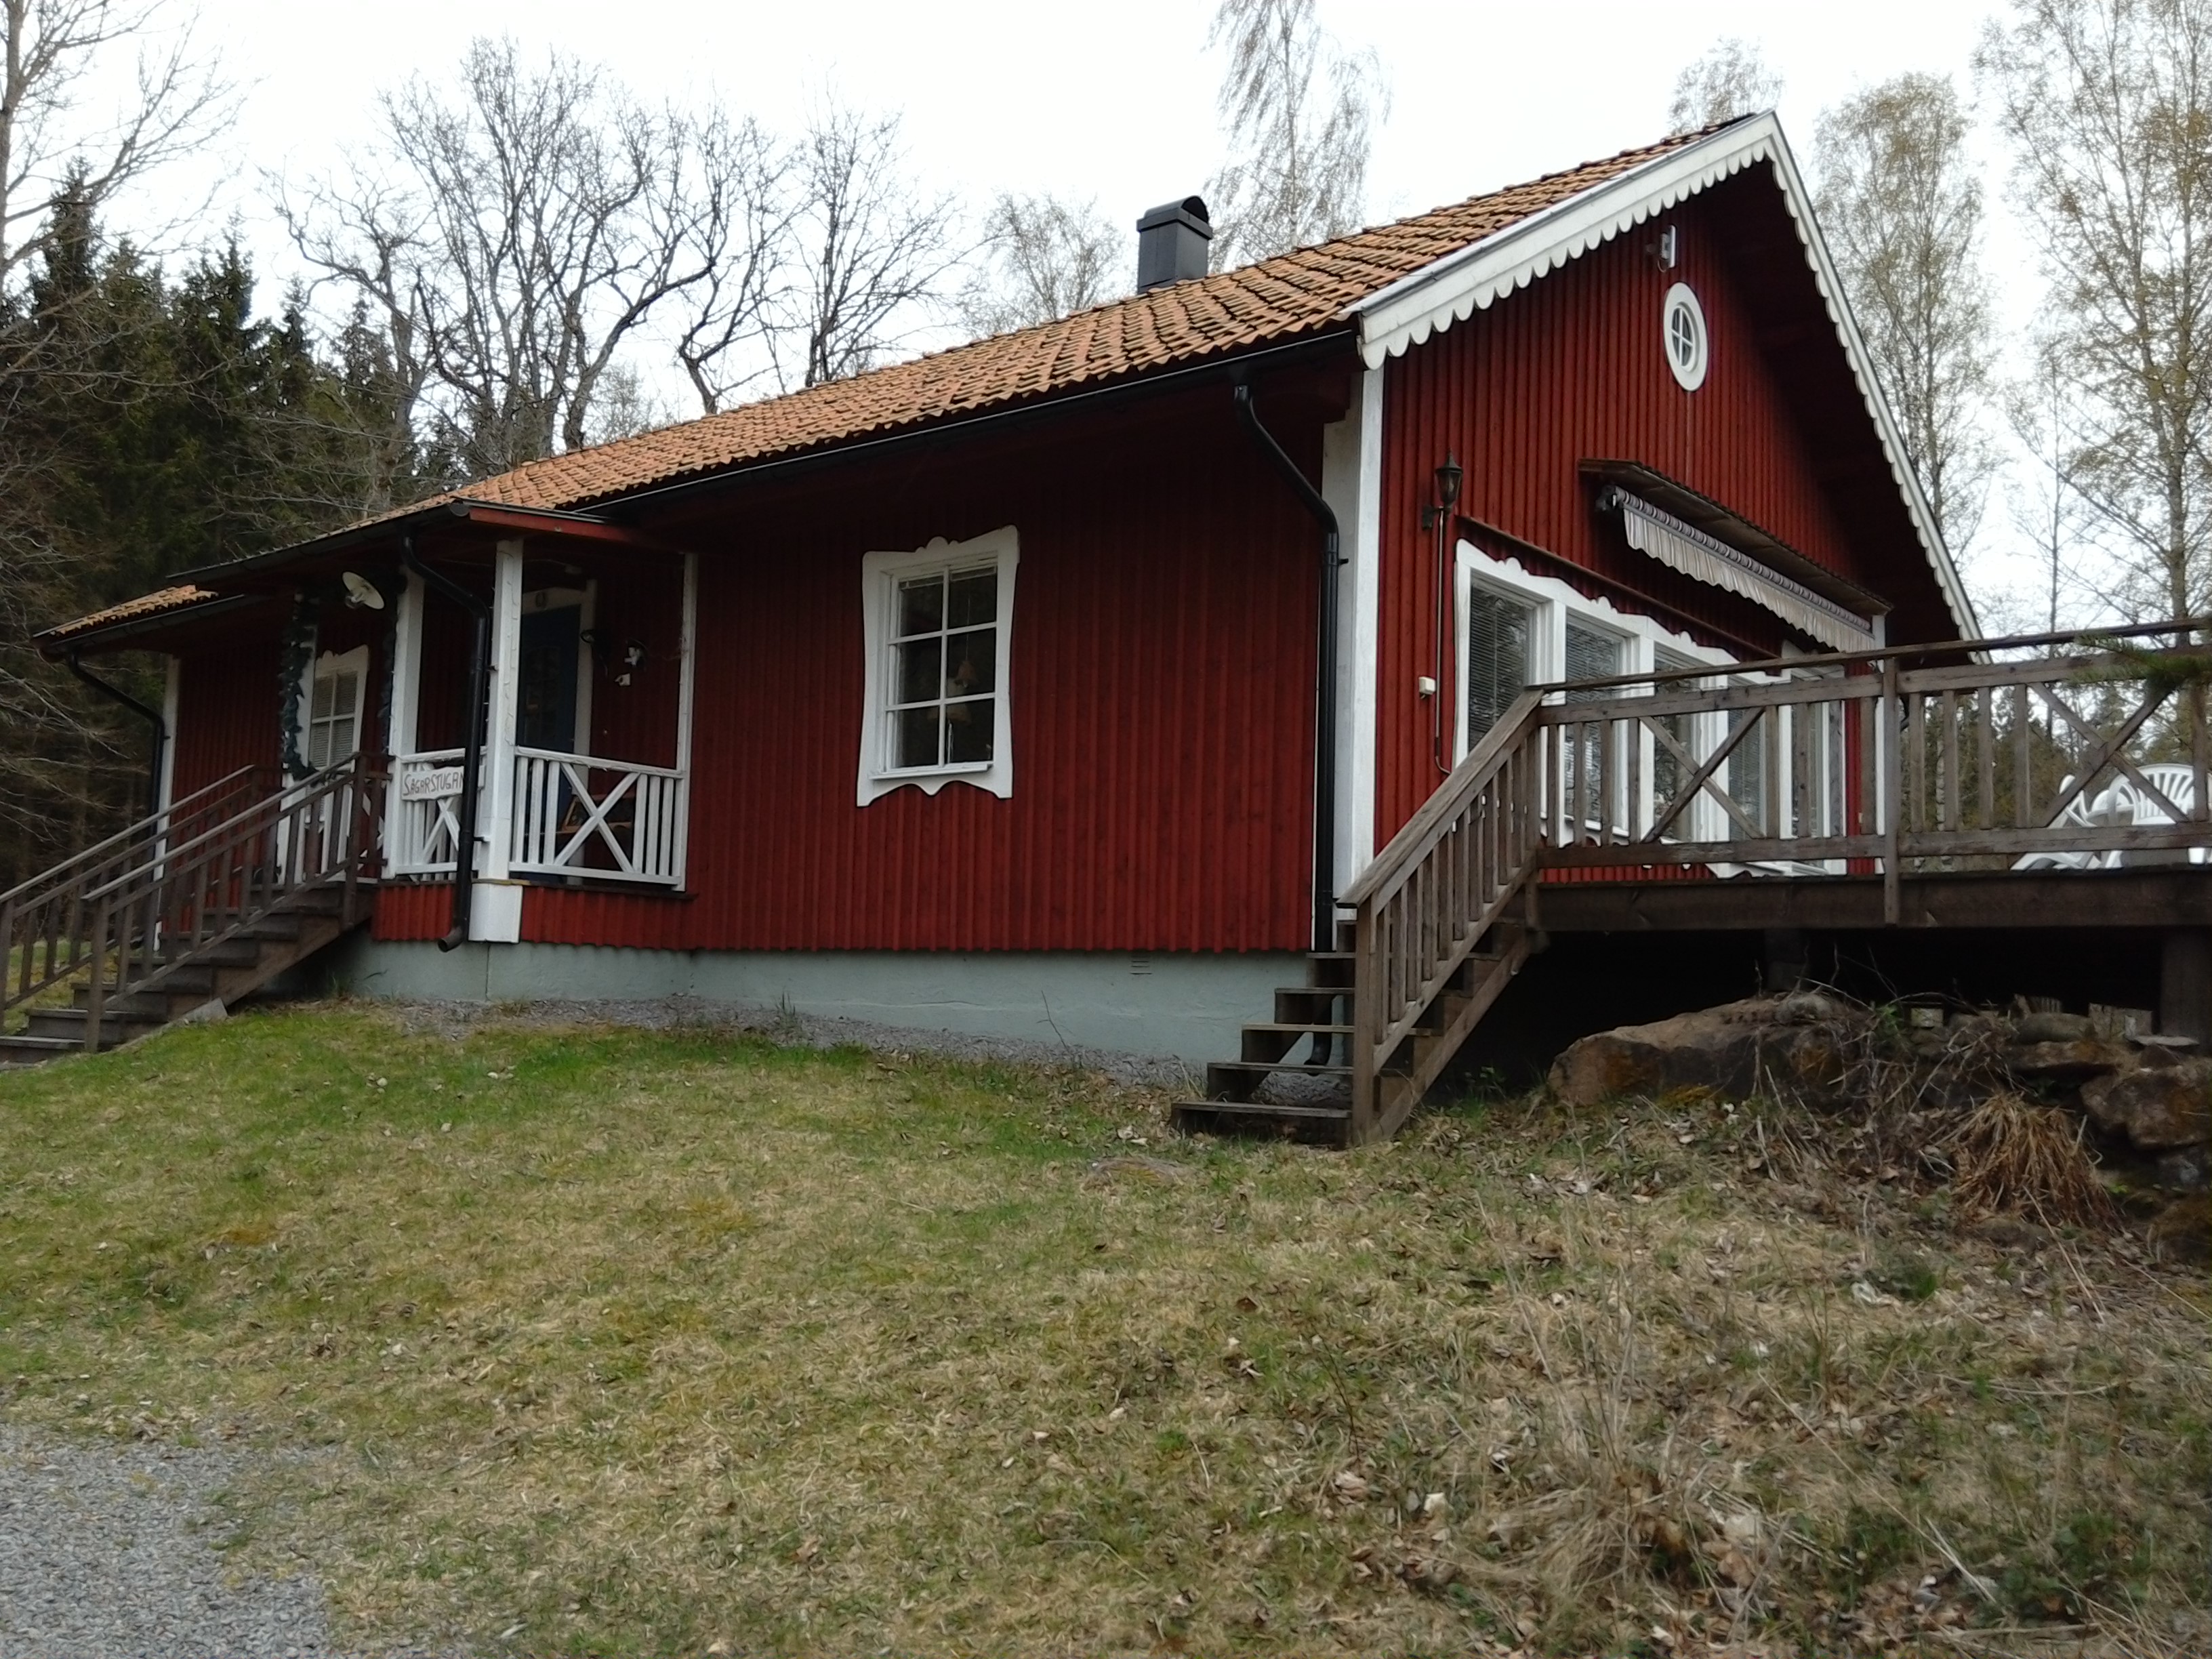 Kronhjortsgården Sågarstugan/cottage in the forest - Cabins for Rent in  Åby, Sweden